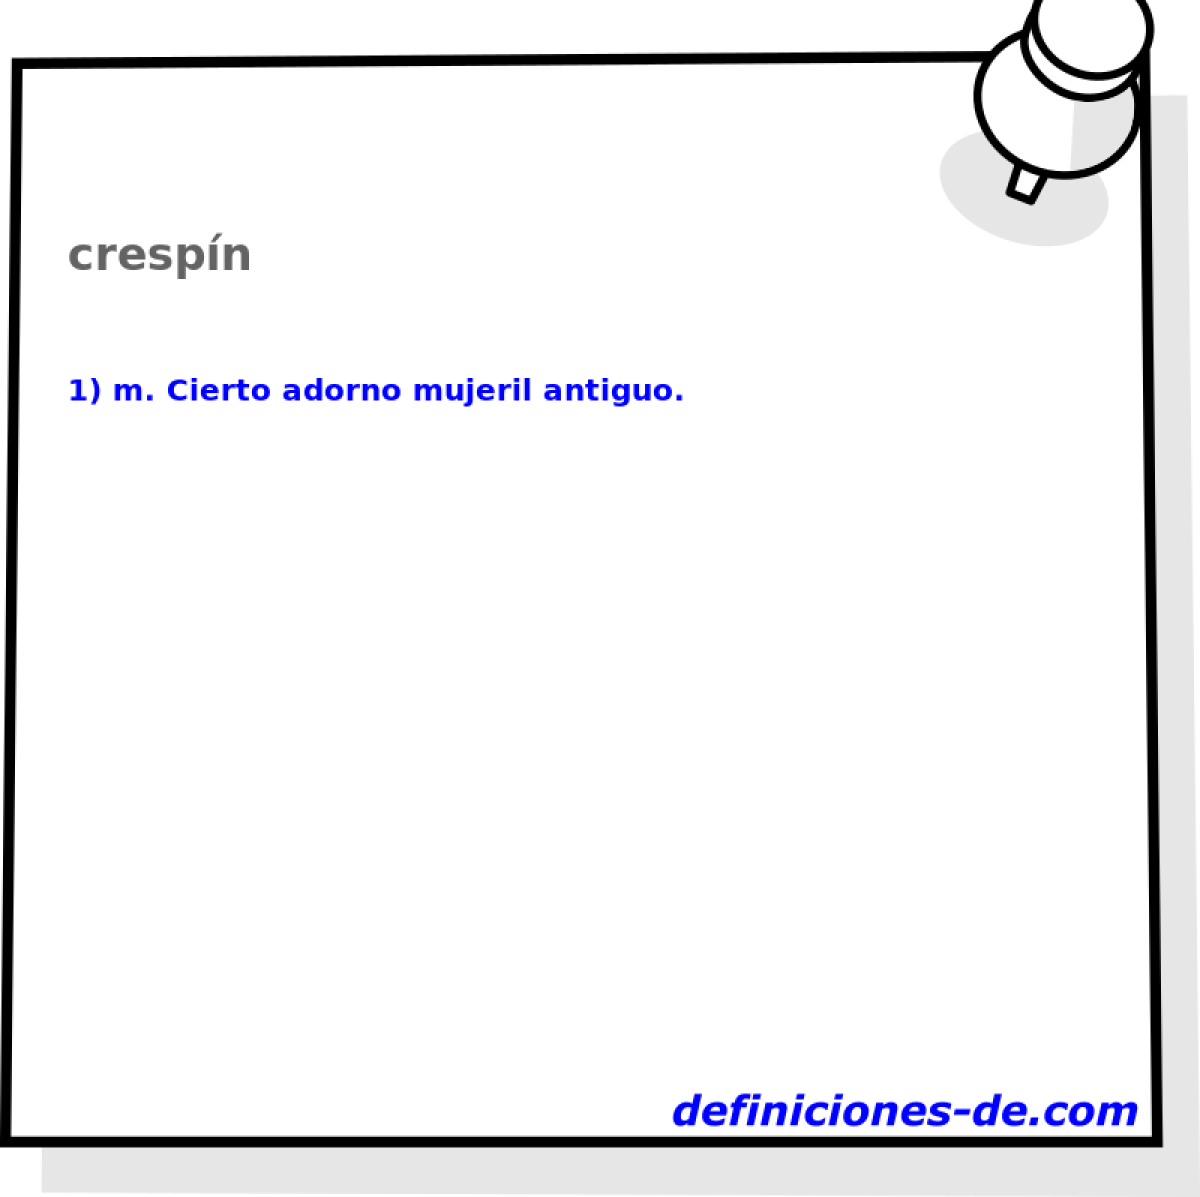 crespn 